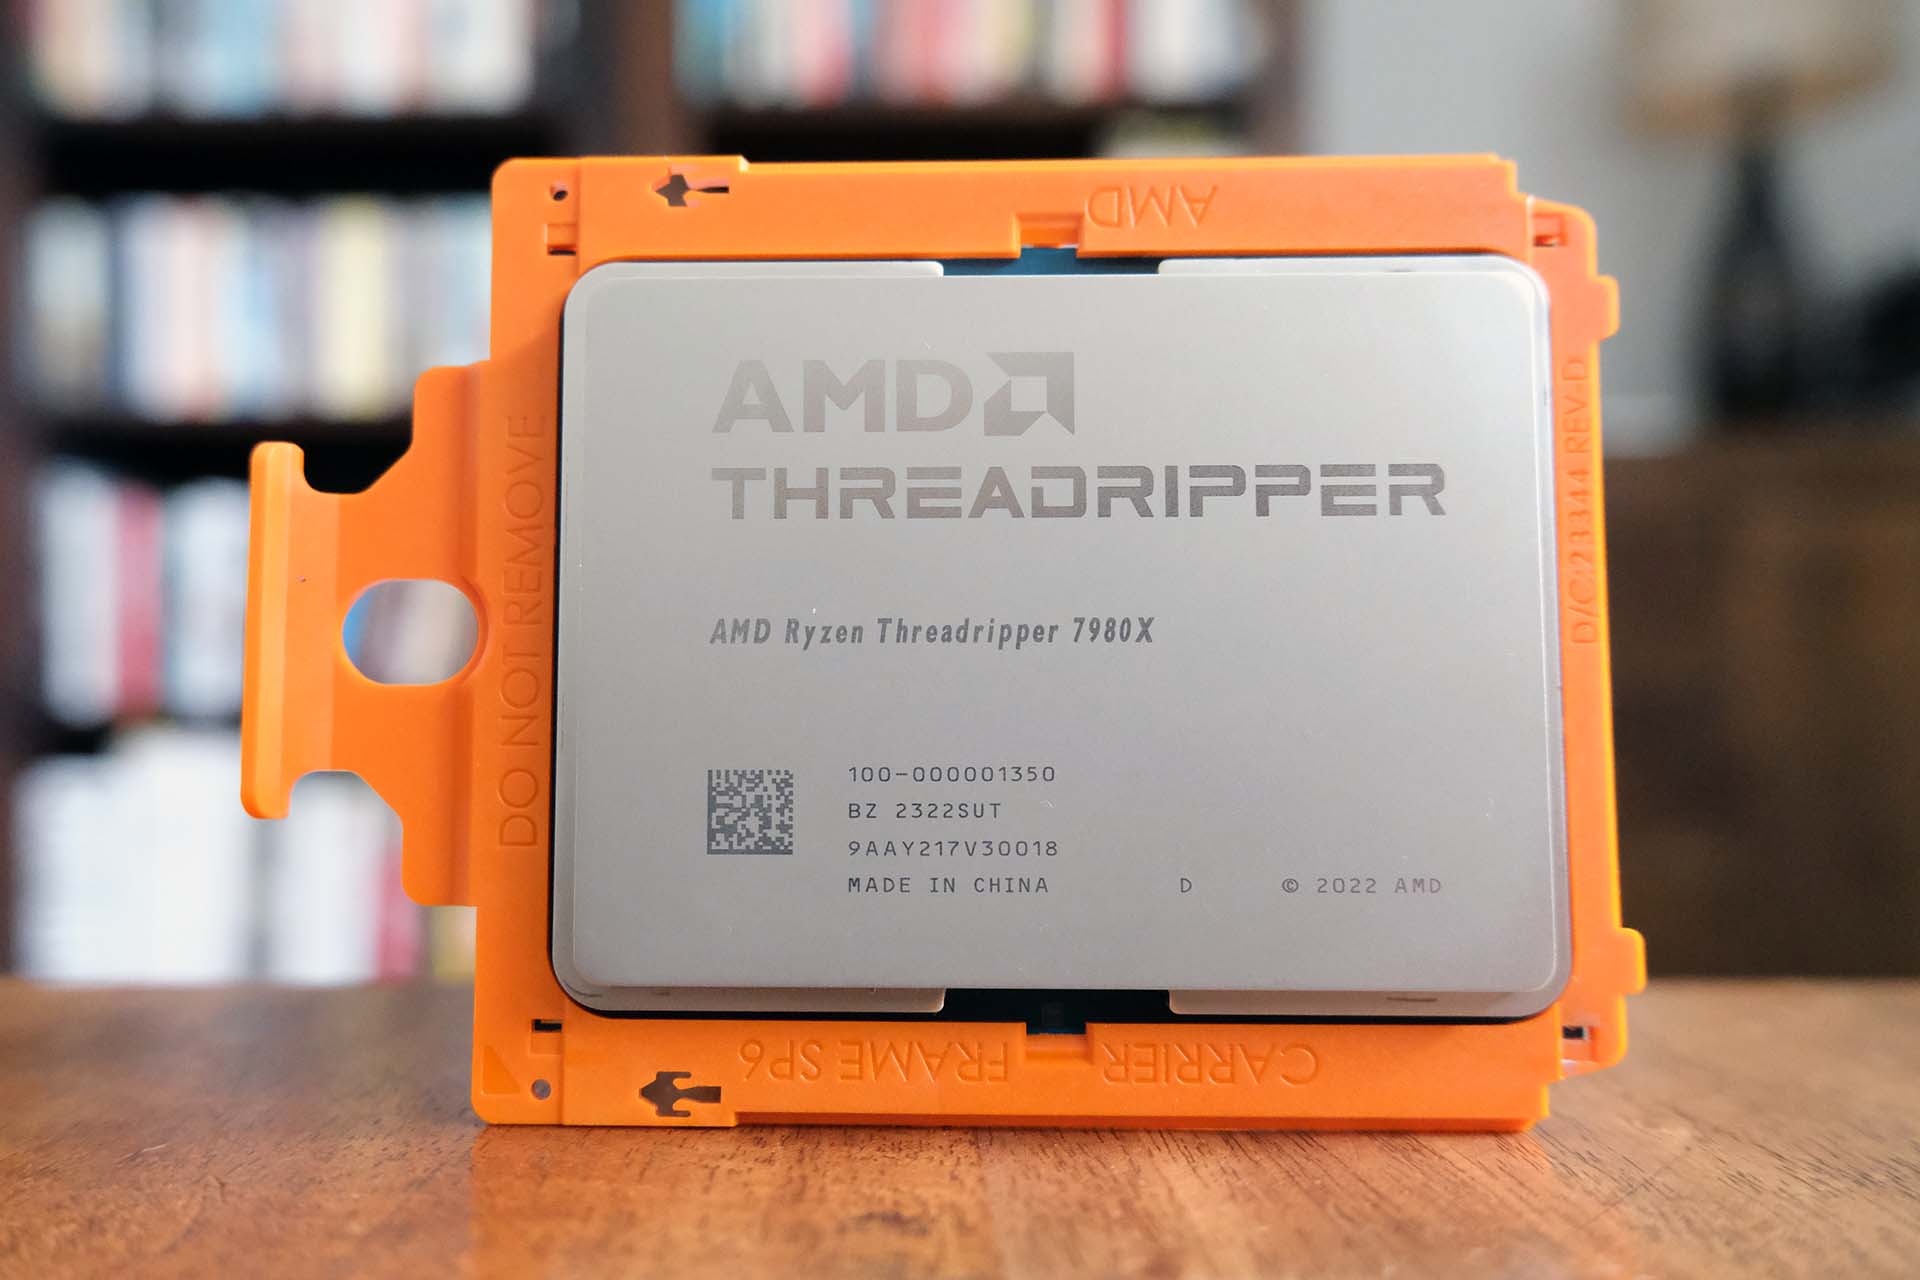 AMD Ryzen Threadripper 7980X CPU set against a blurred background.